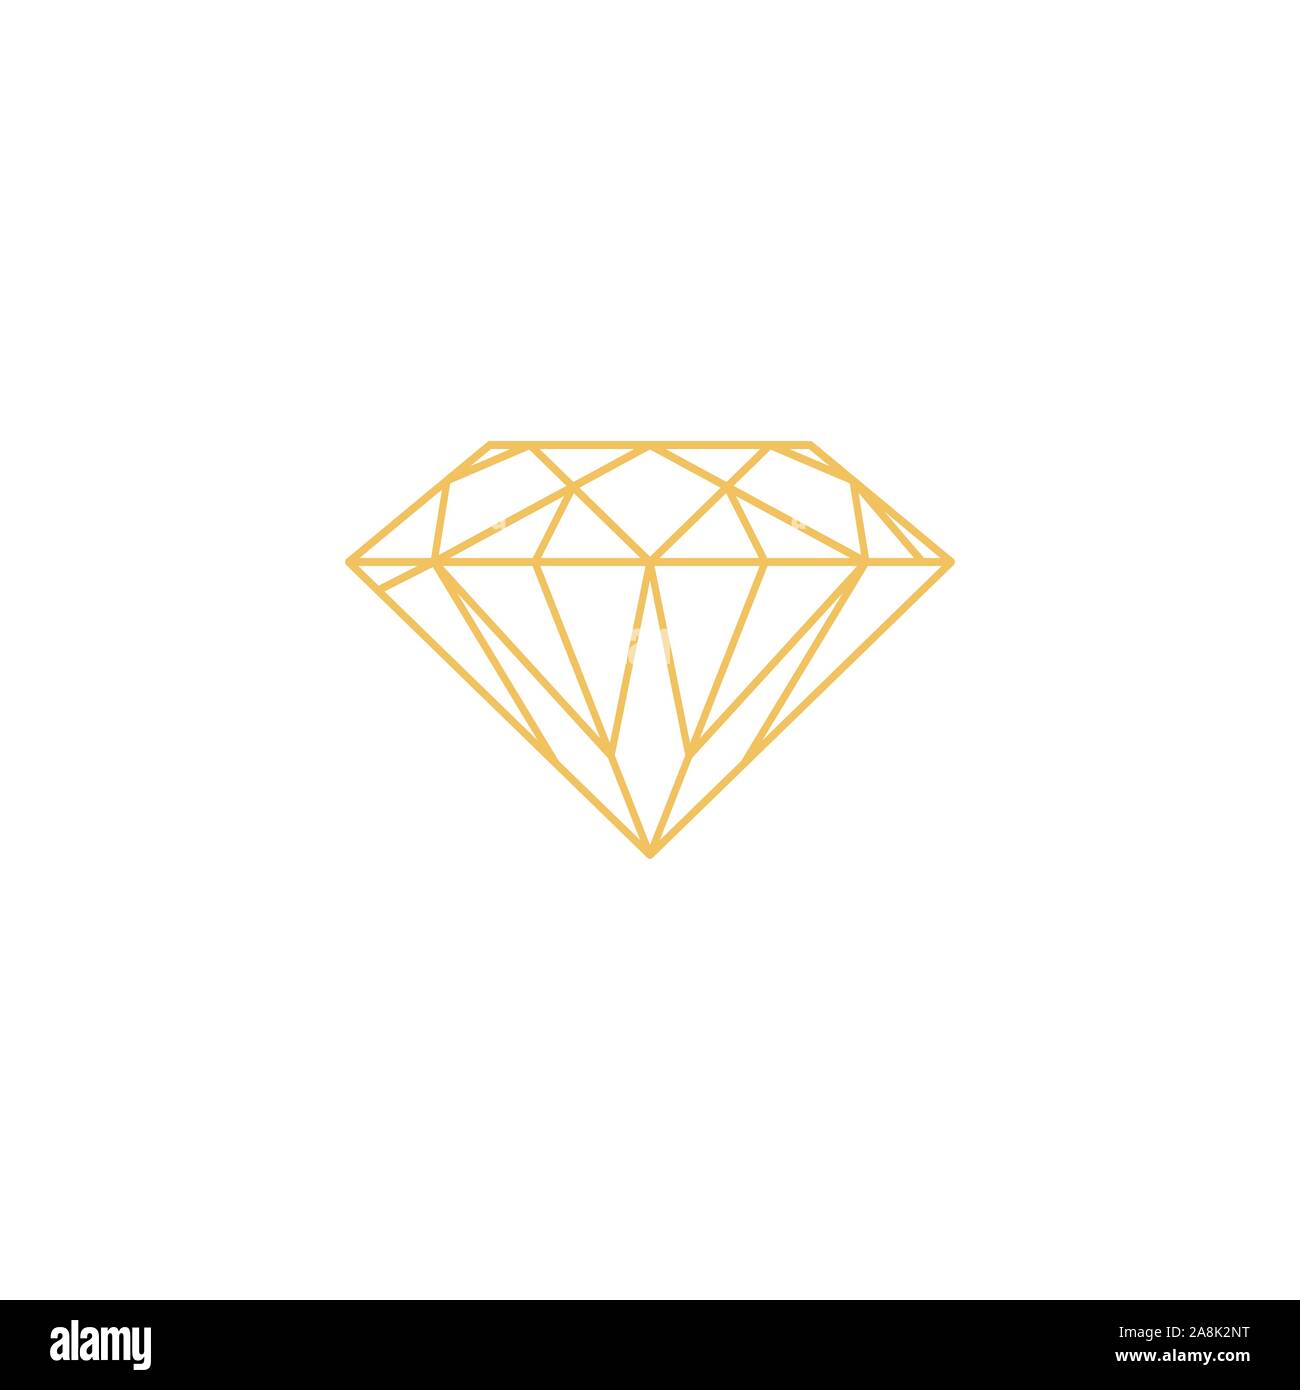 Diamond logo vector design templates Stock Vector